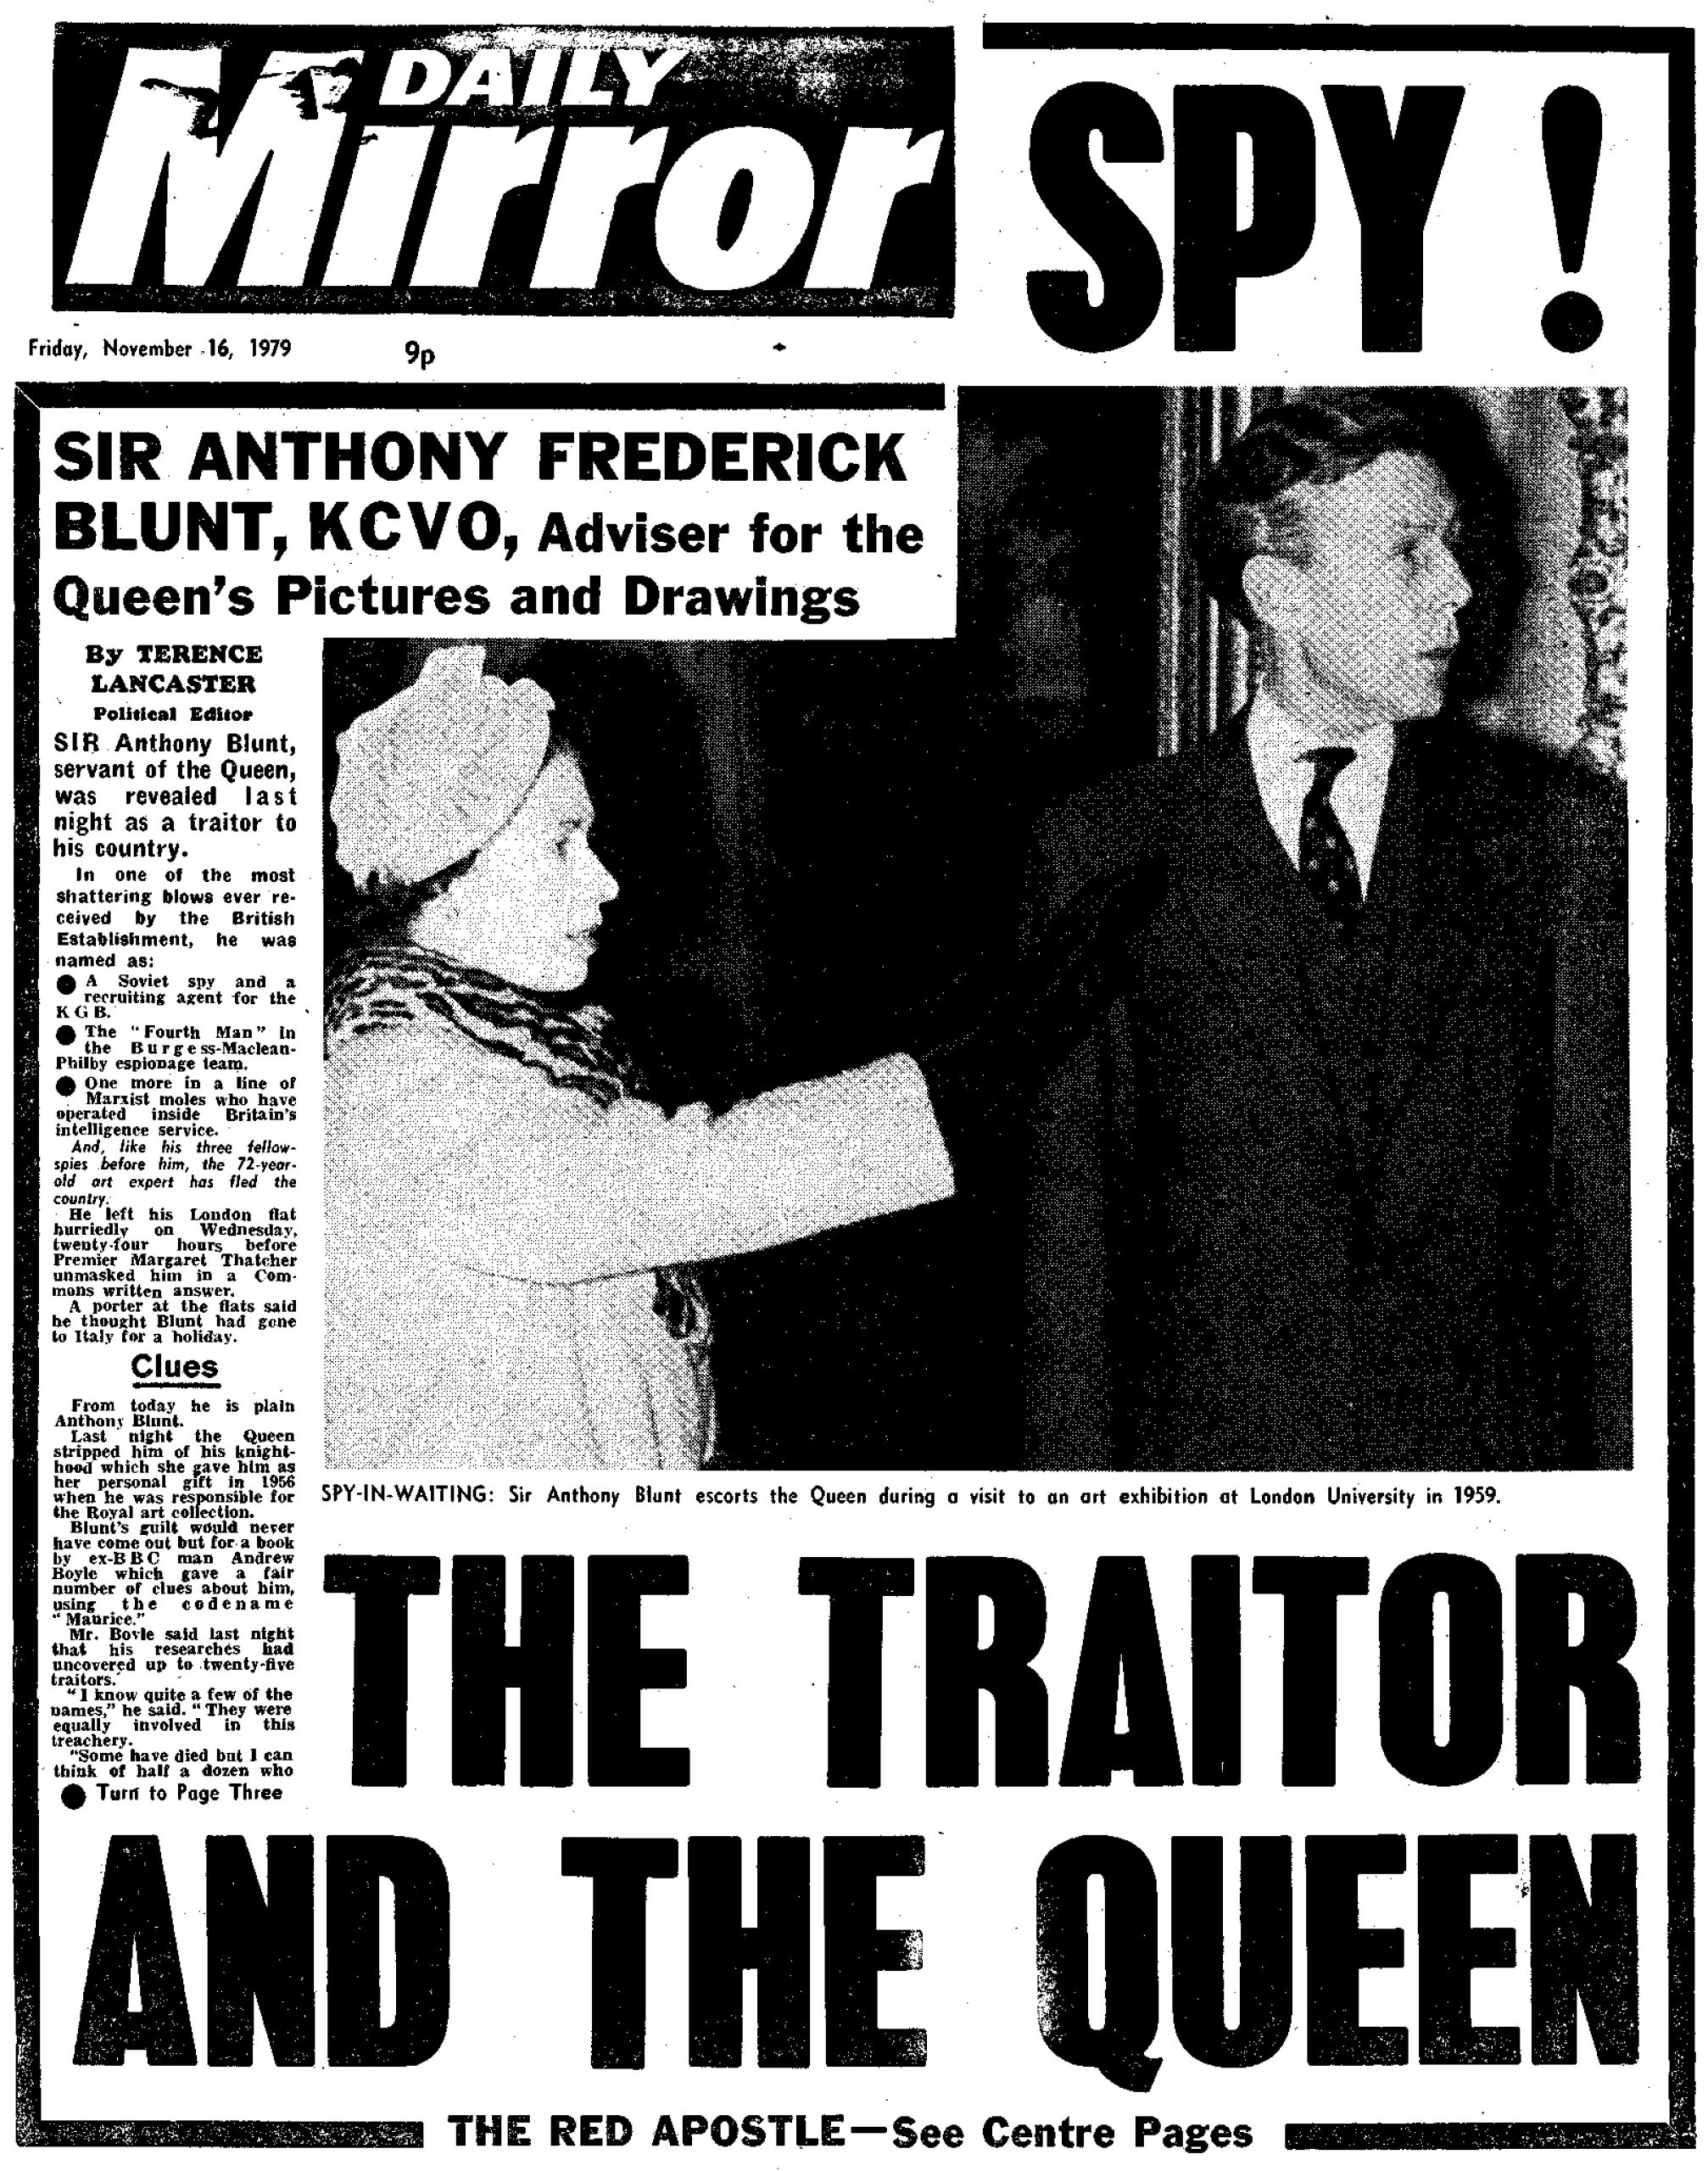 Blunt fue expuesto como espía soviético y despojado de su título de caballero en noviembre de 1979, después de años en la casa real